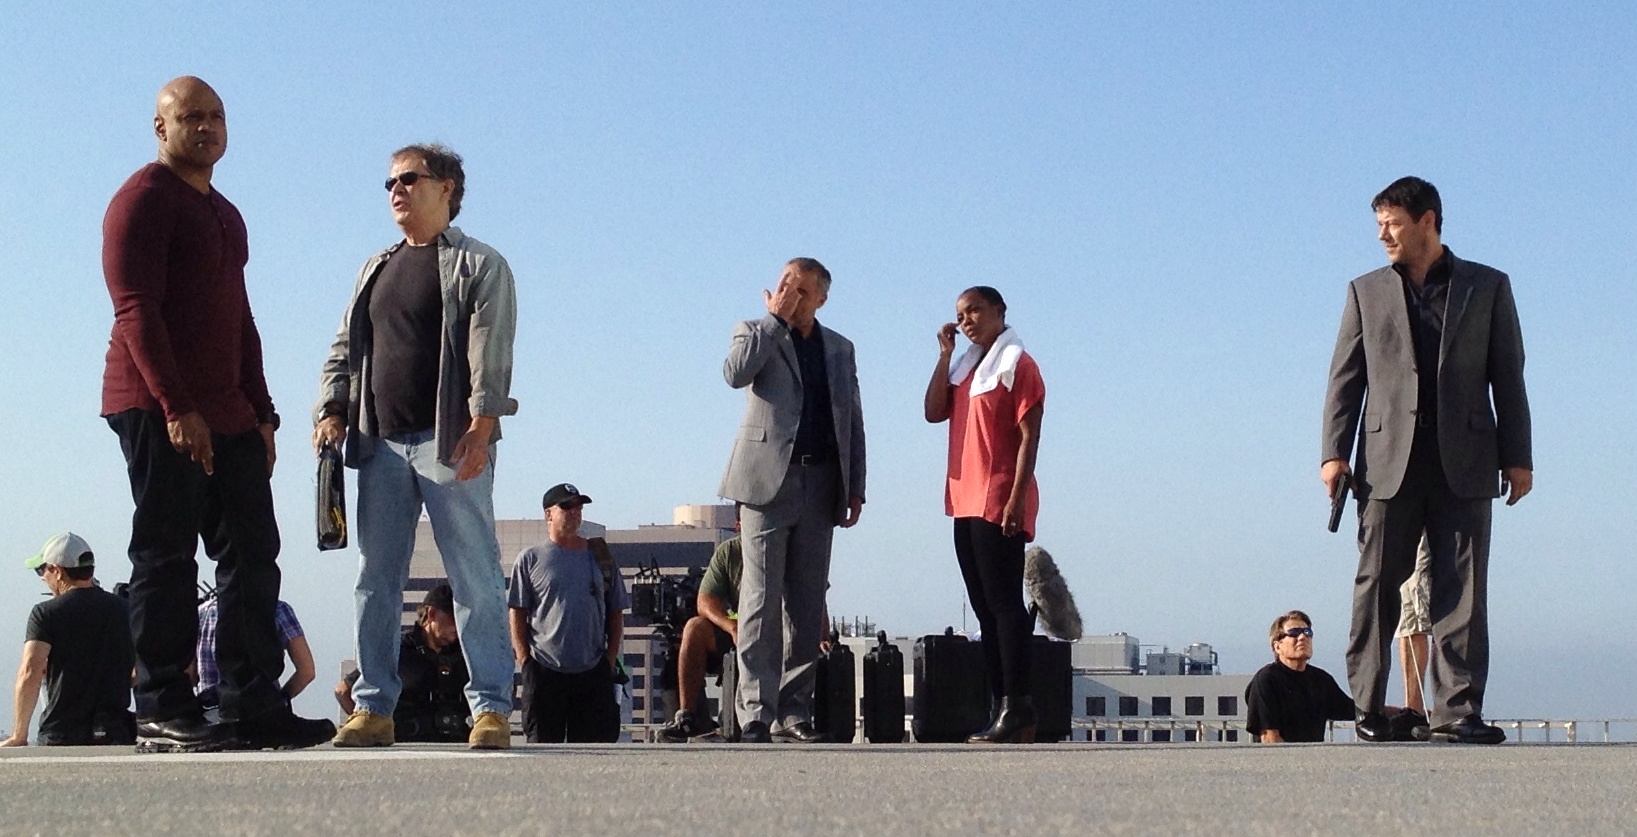 NCIS LA Season 5 premiere. Stand off scene.